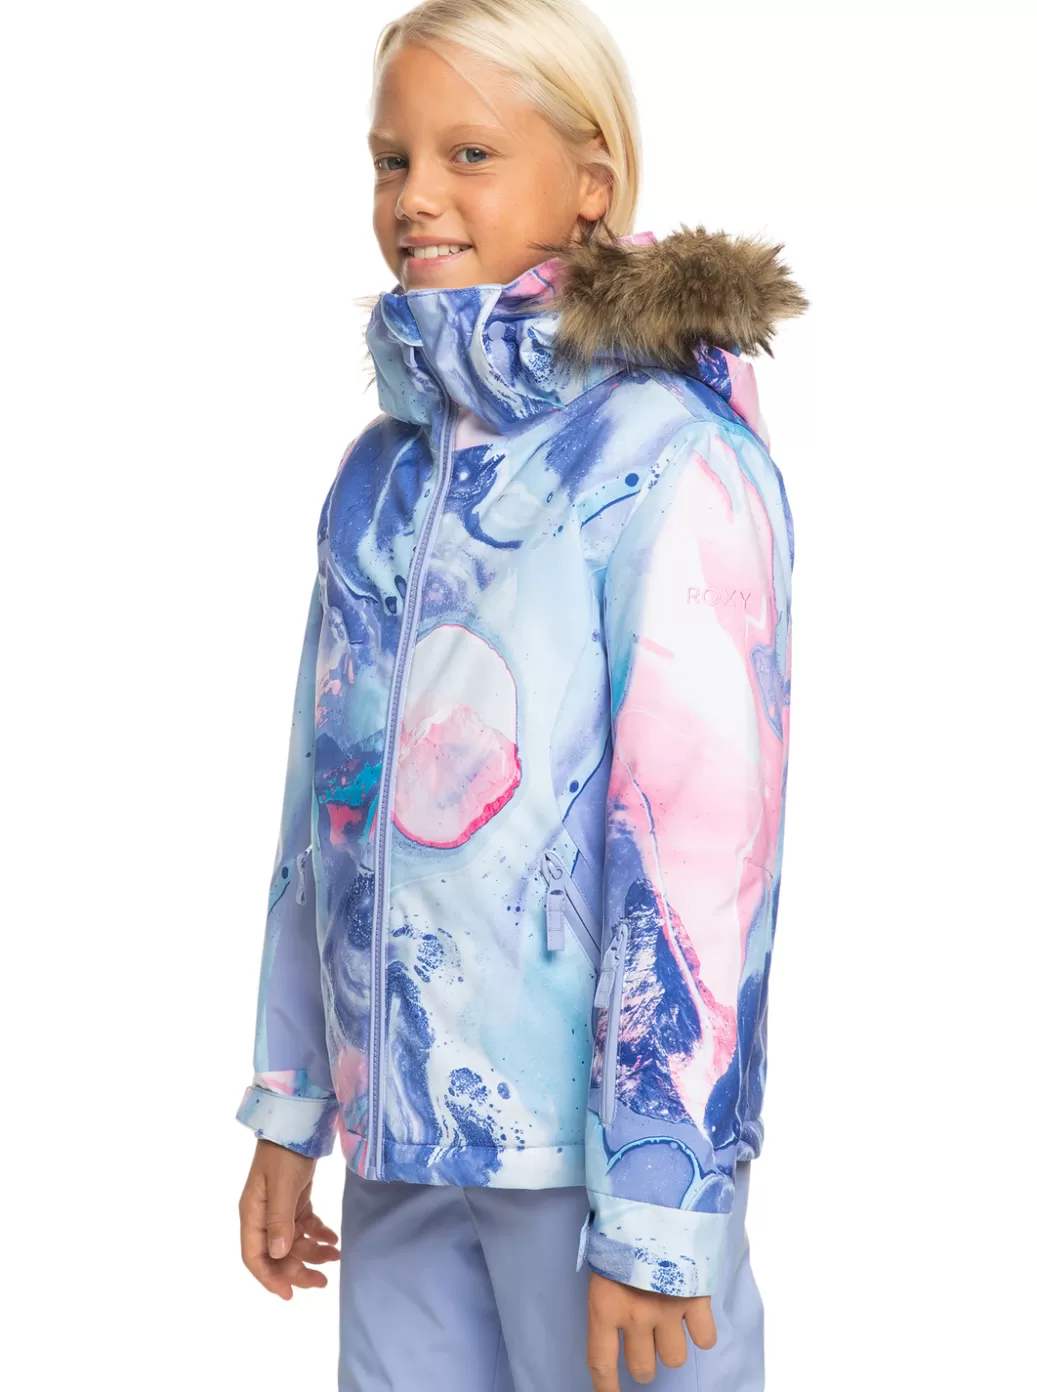 Snow Jackets | Girls Snow | KIDS | WOMEN ROXY Girl's 4-16 American Pie Technical Snow Jacket Azure Blue Landscape